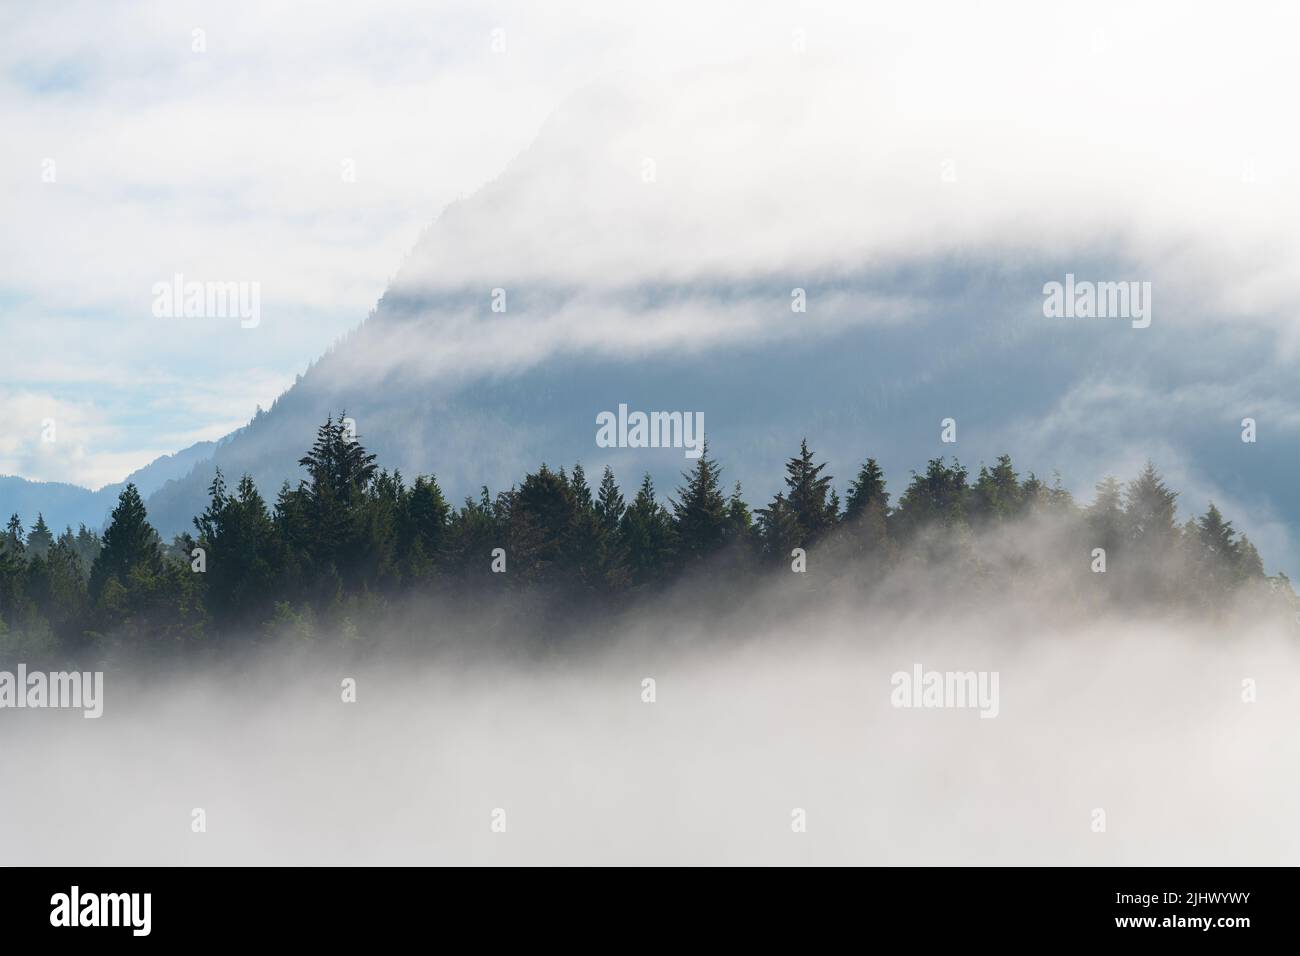 Forêt de cèdres rouges de l'Ouest dans le brouillard de l'île Meares avec un sommet de montagne à cône unique vu de Tofino, île de Vancouver, Colombie-Britannique, Canada. Banque D'Images